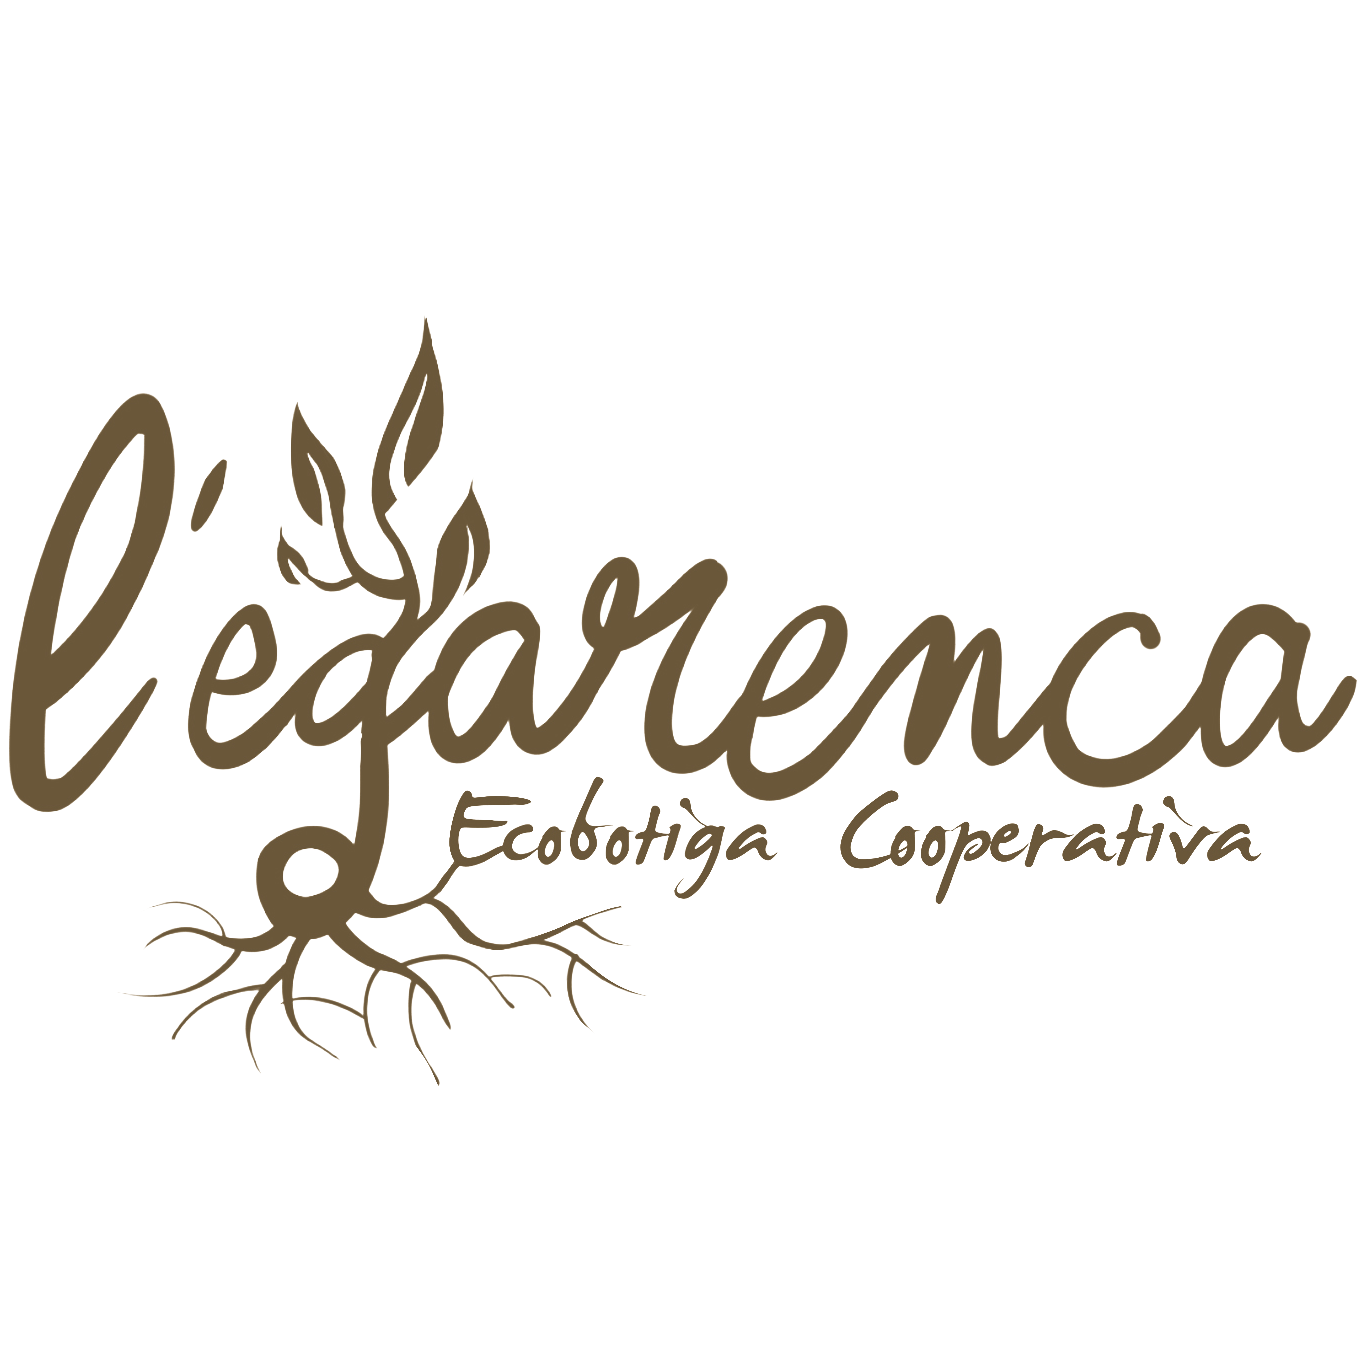 Logo L'Egarenca - ecobotiga cooperativa